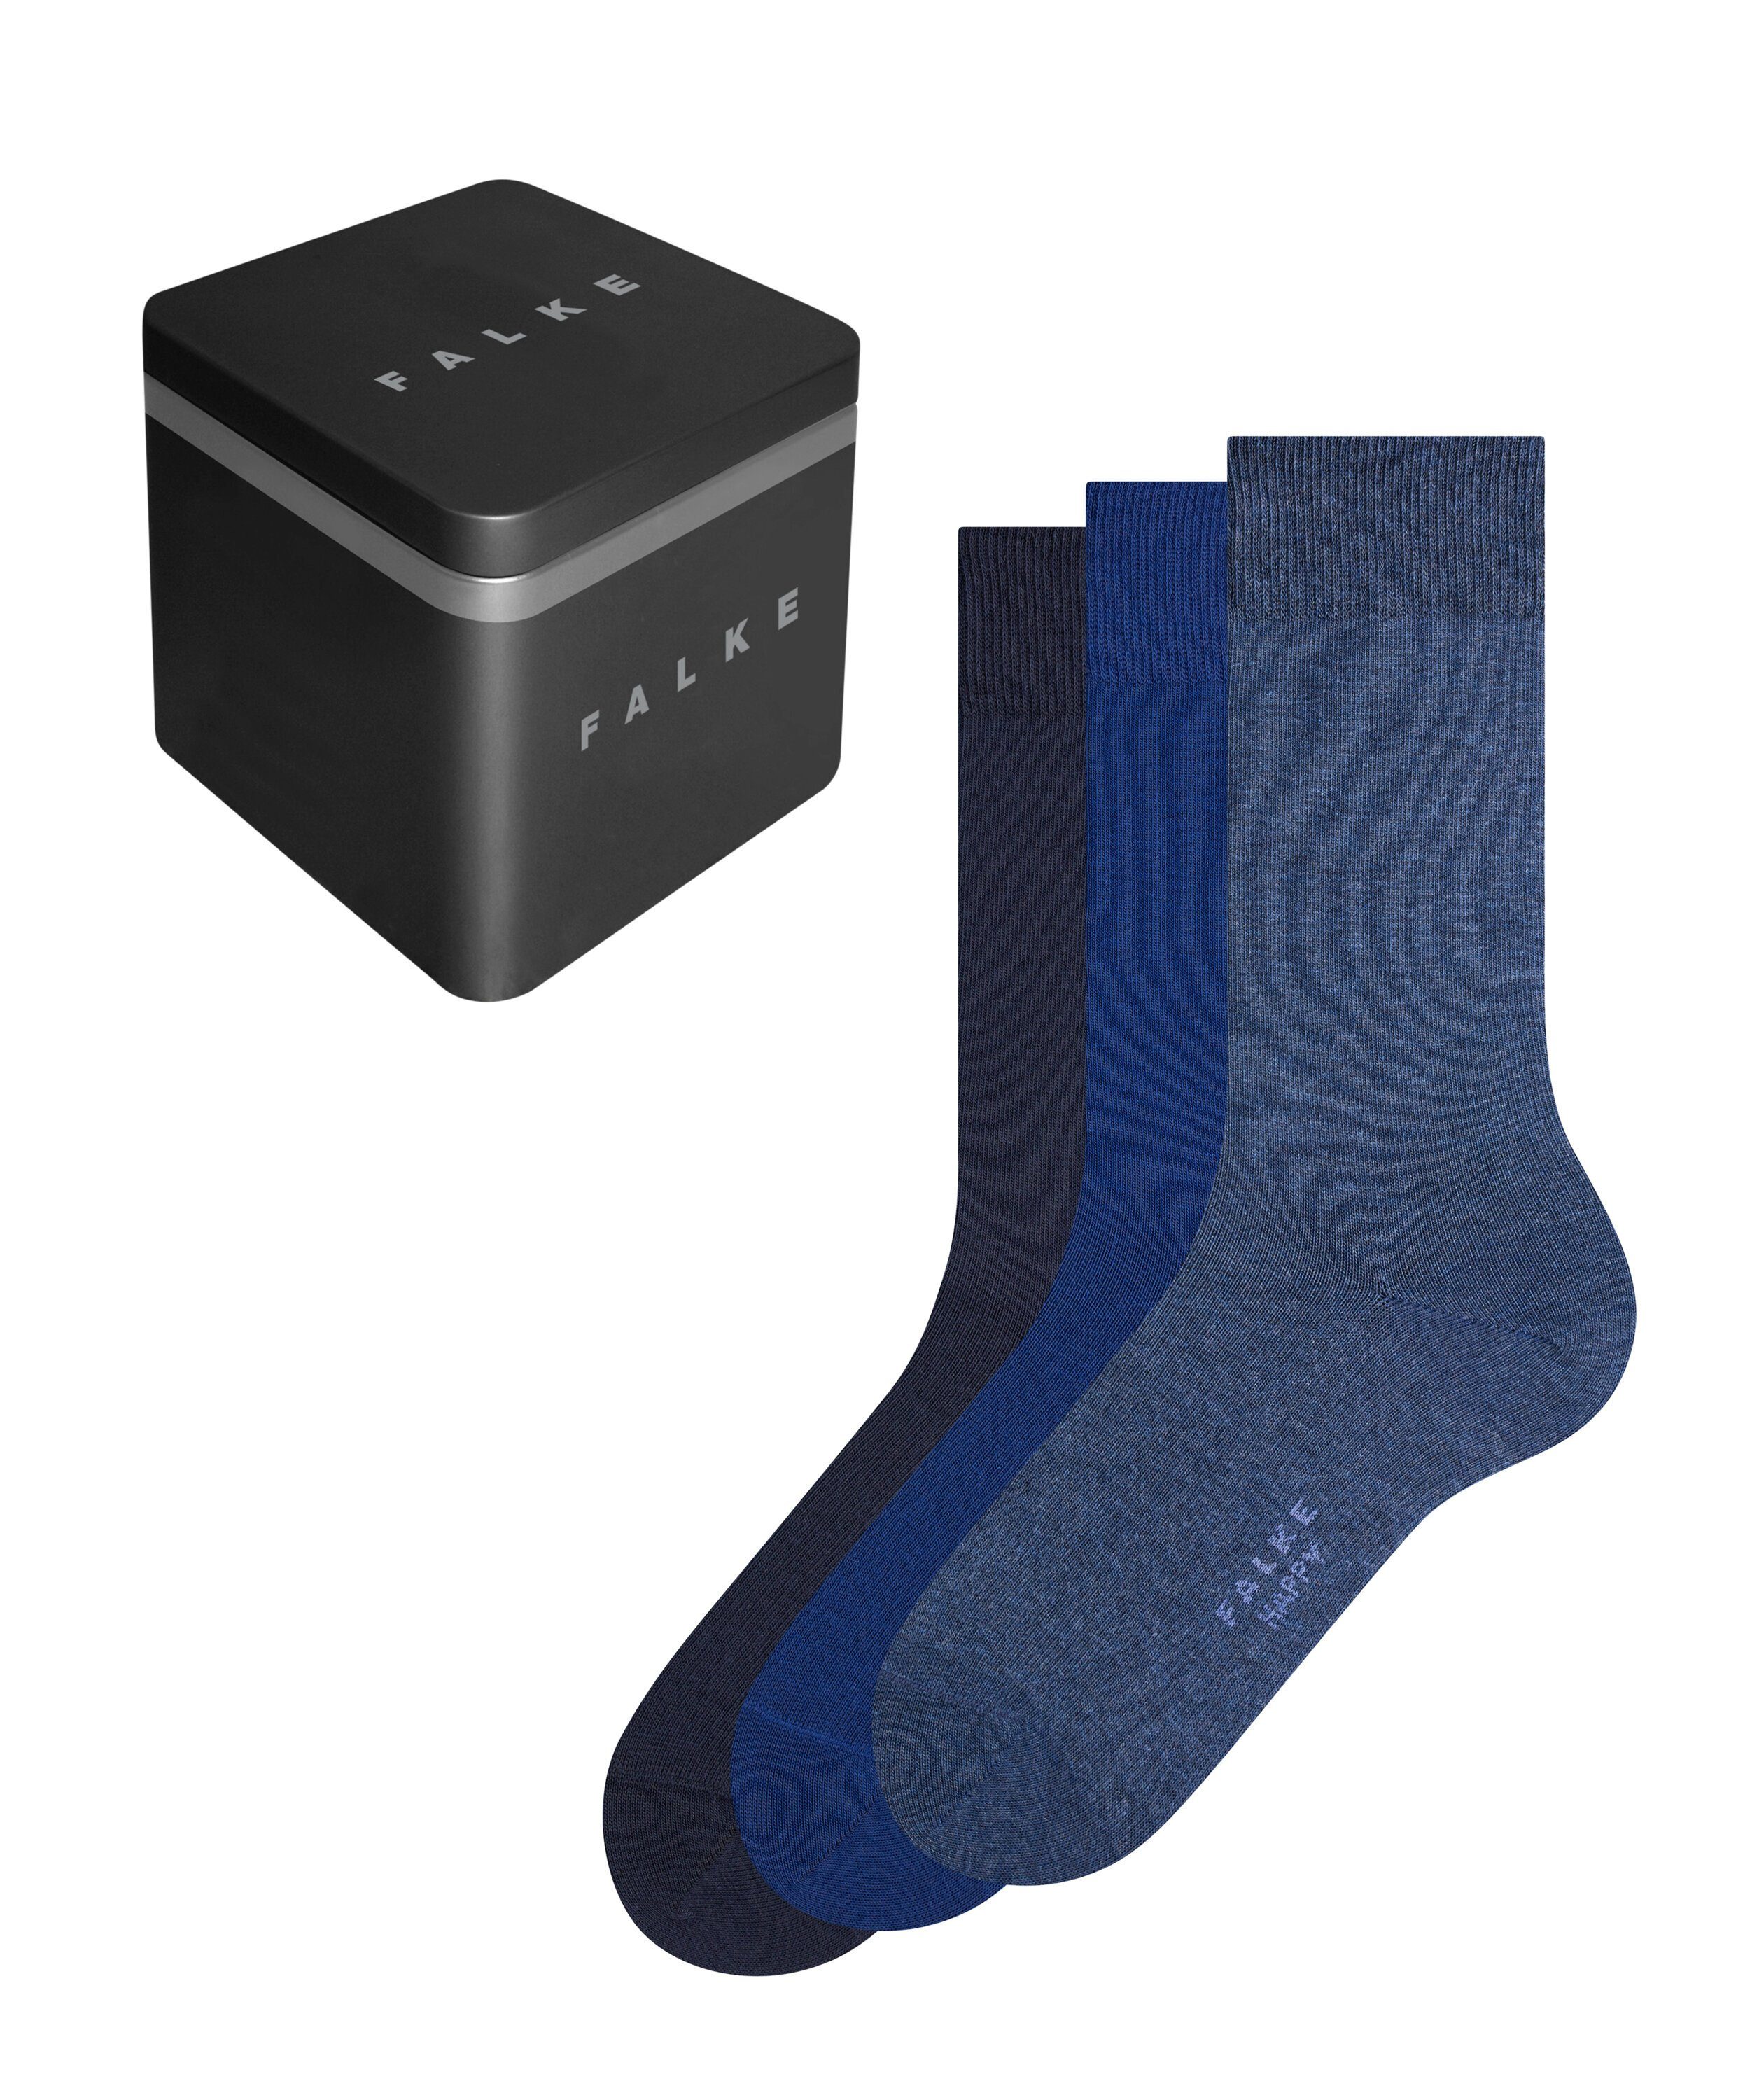 FALKE Socken Happy Box 3-Pack (3-Paar) sortiment (0020)